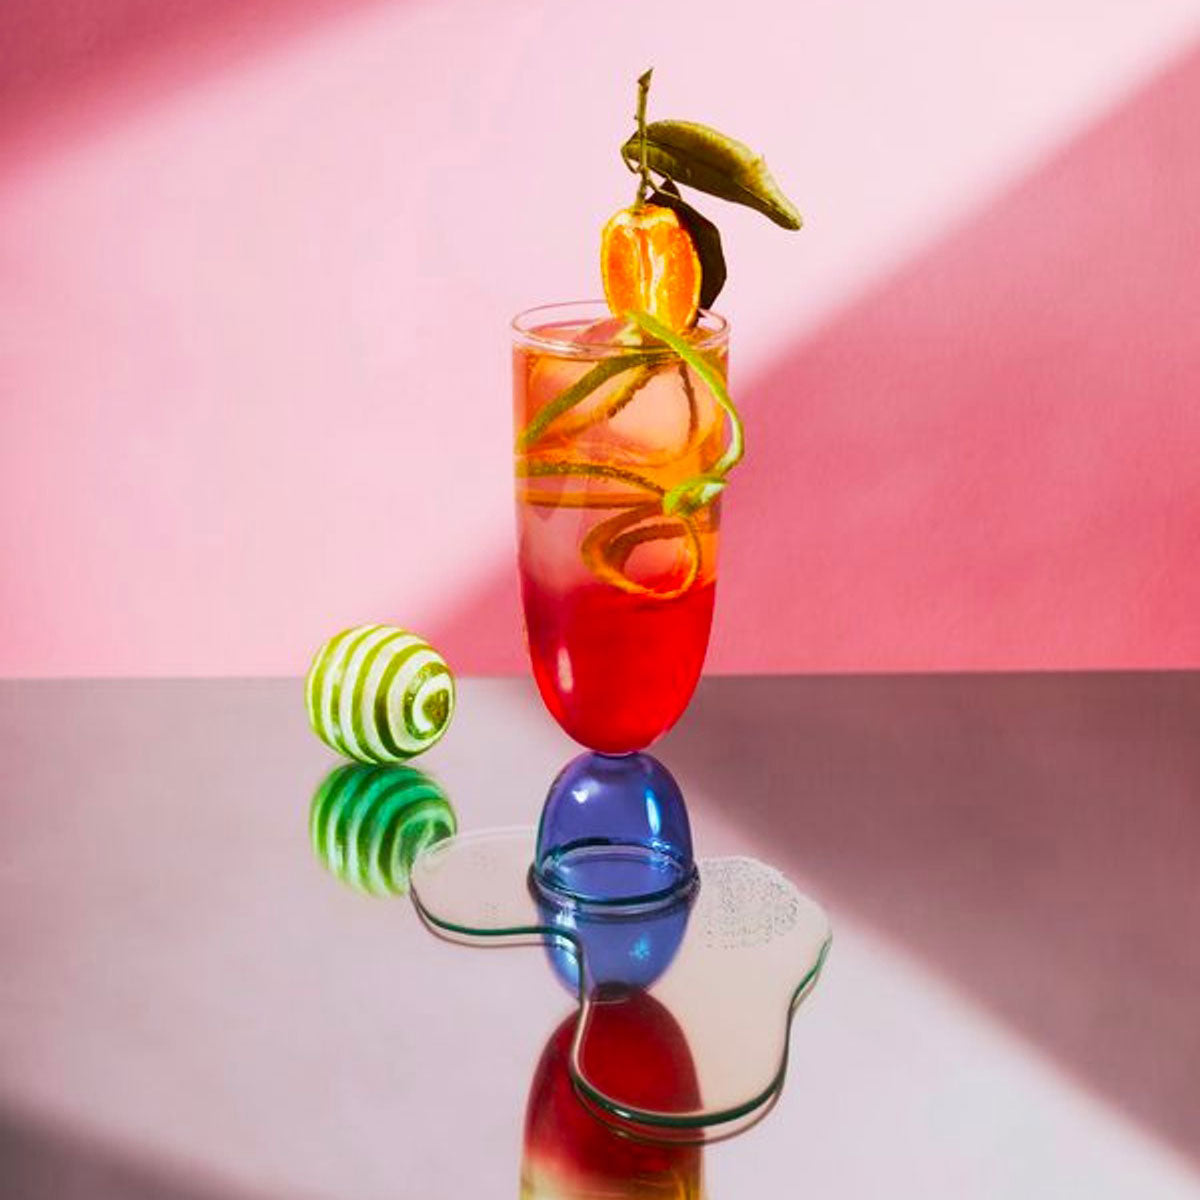 Mamo Highball Cocktail Glass - Halftone